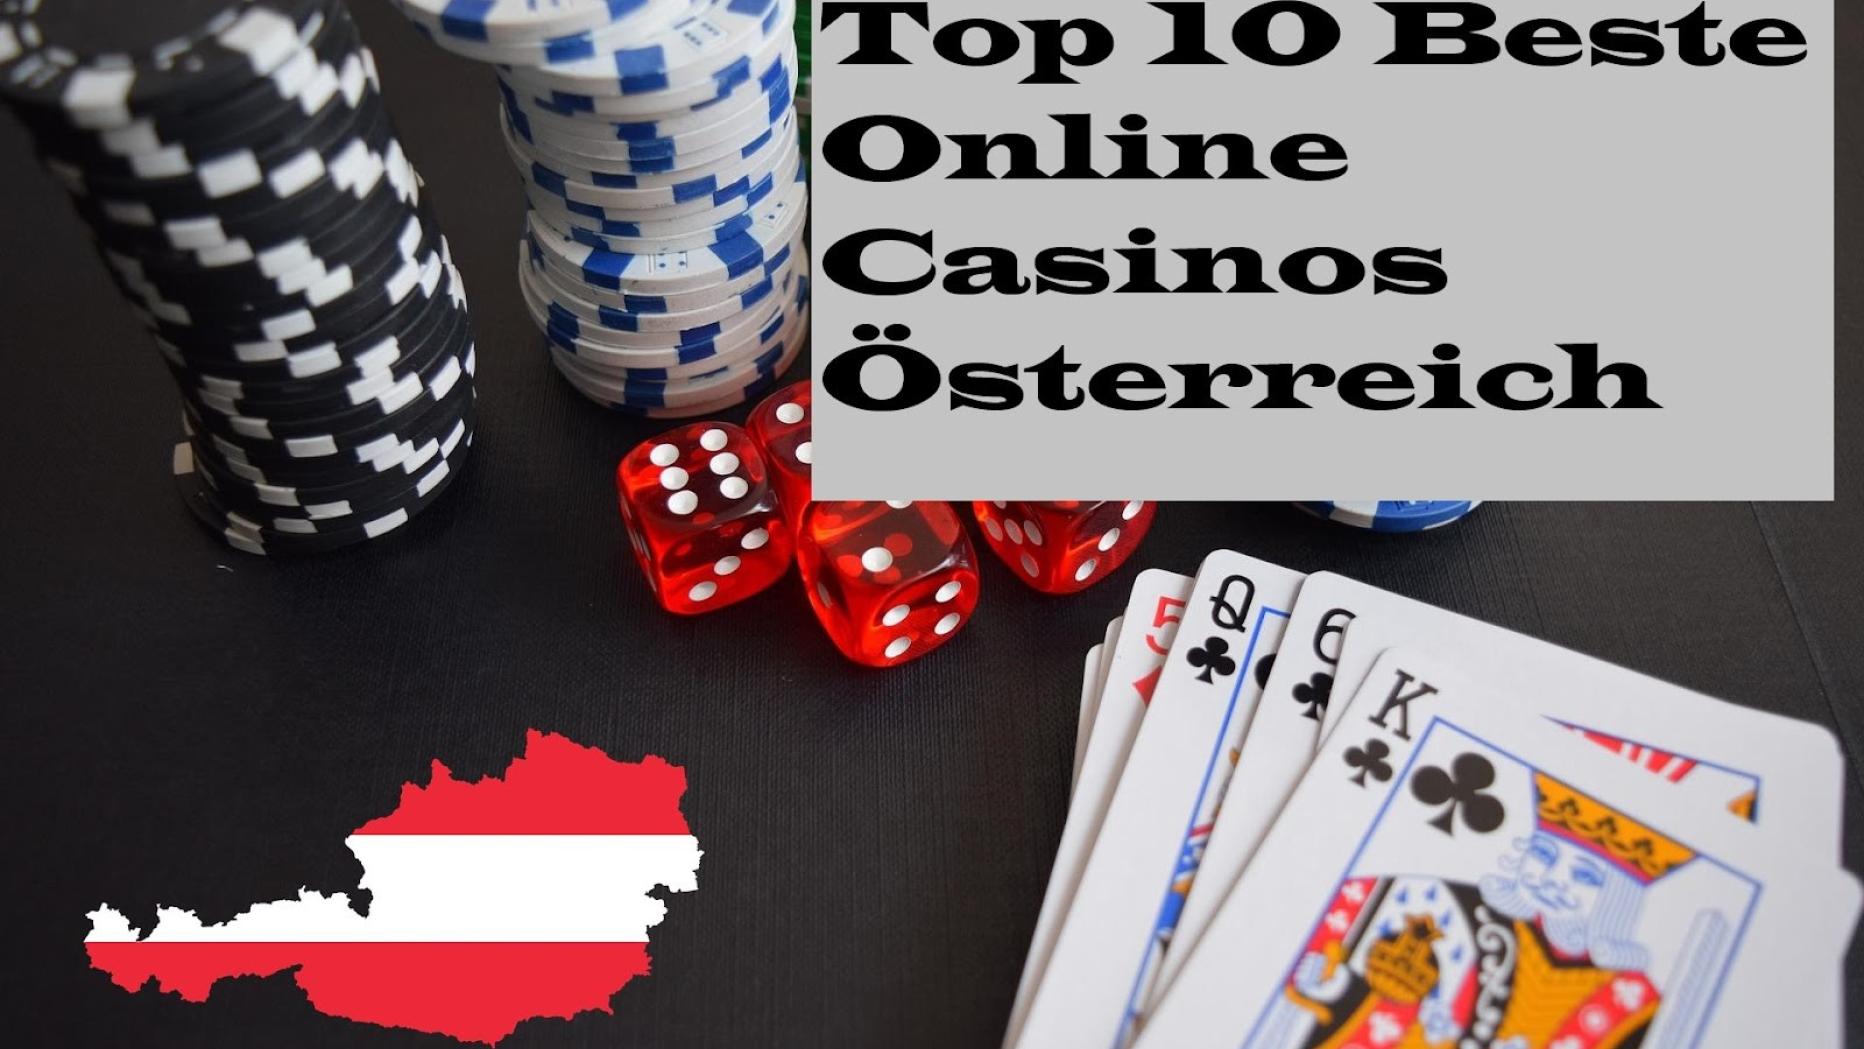 50 beantwortete Fragen zu neue Online Casinos Österreich